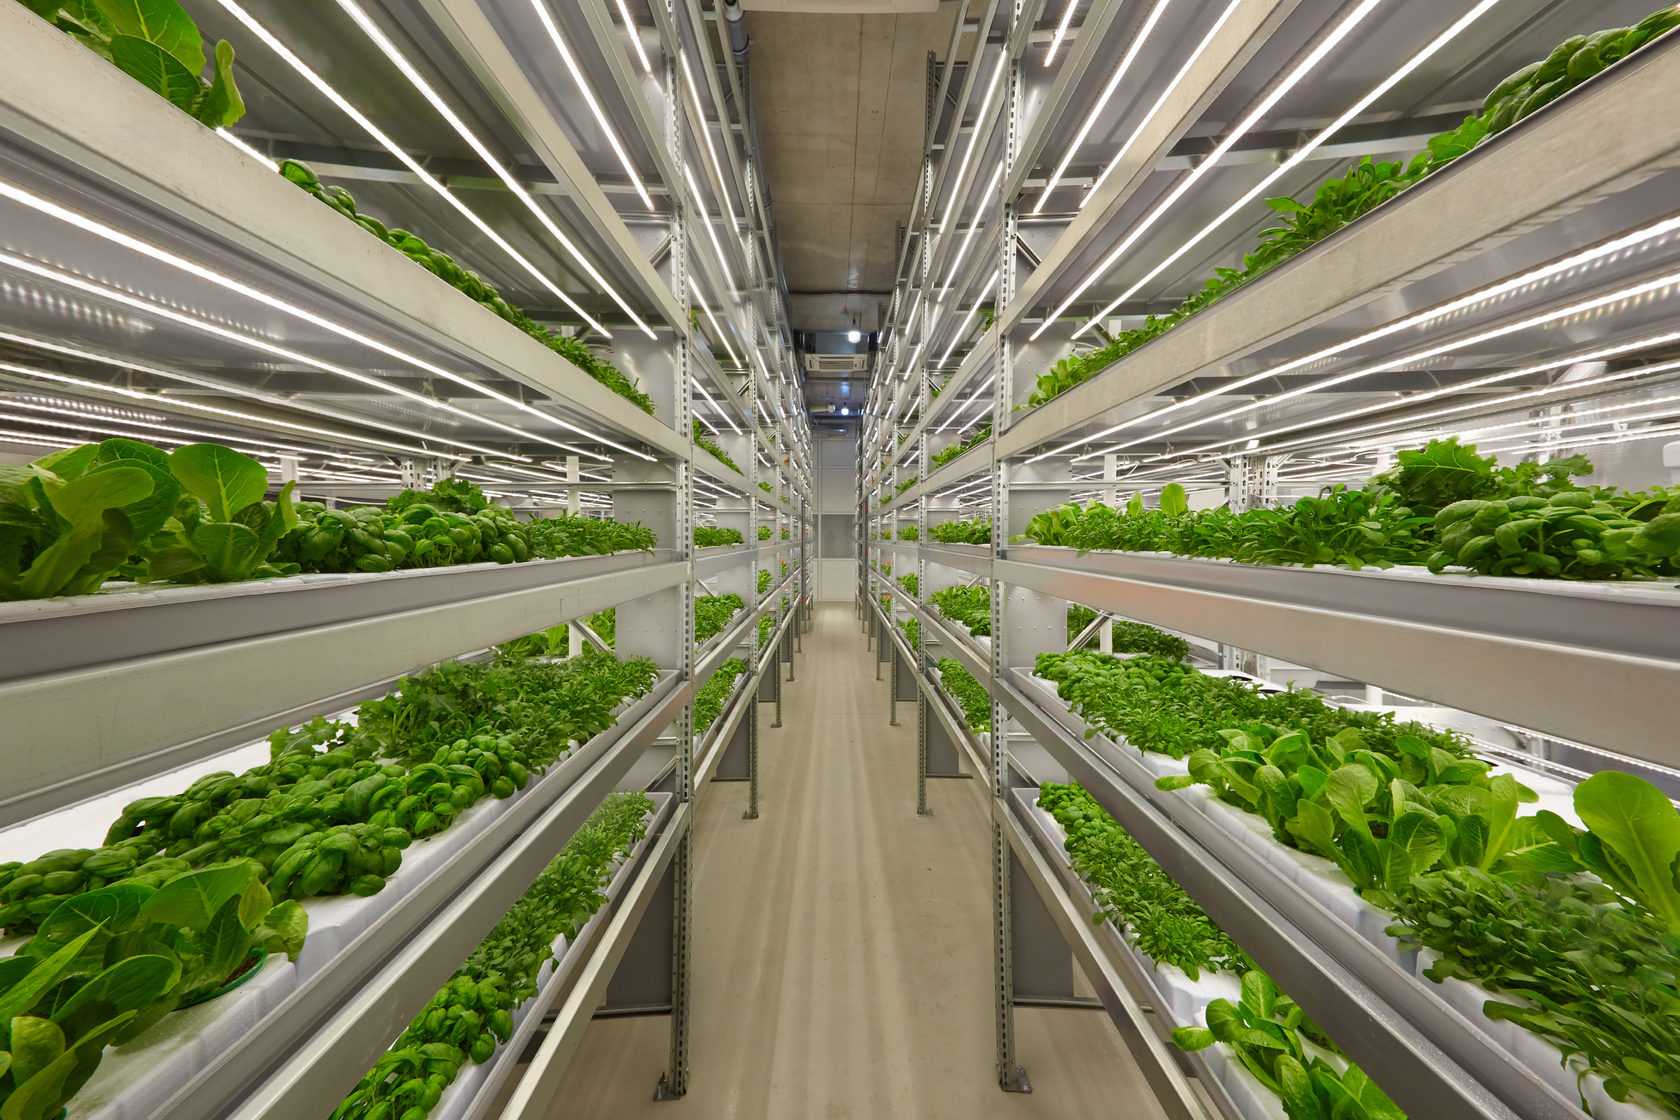 Plants grow in racks on an indoor automated farm.